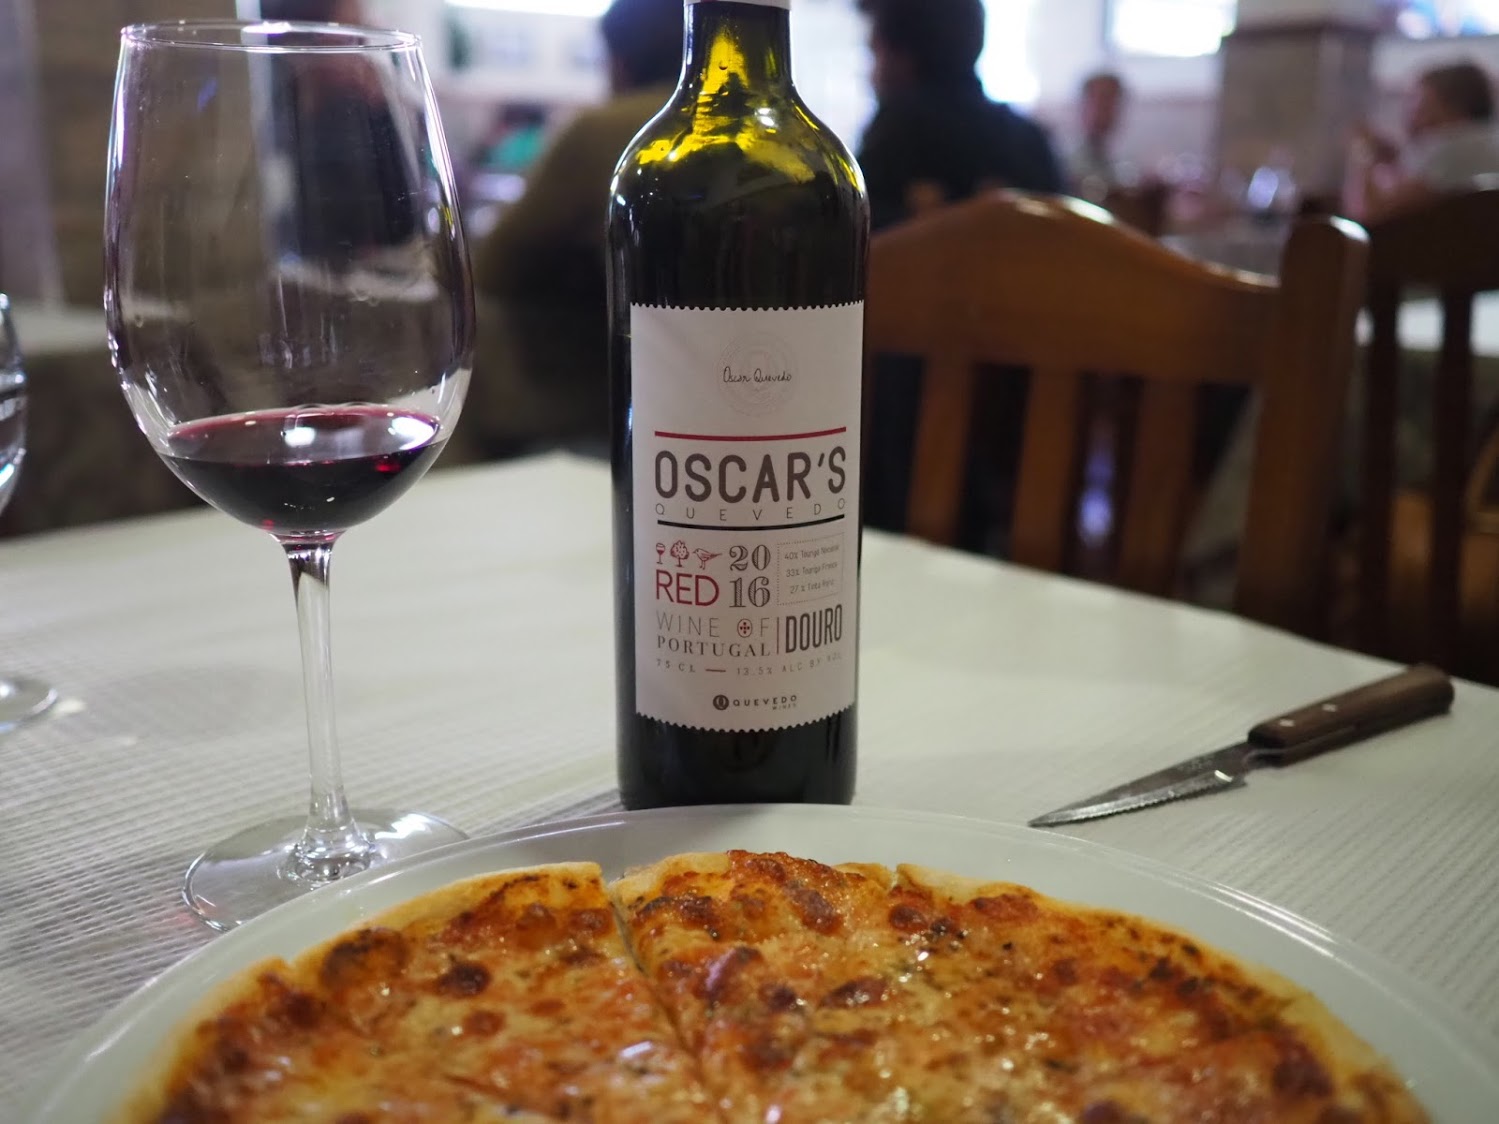 ランチはサン・ジョアン・ダ・ペスケイラの町にある人気のピッツァリアで。美味しいピッツアには赤ワインが良く合います。